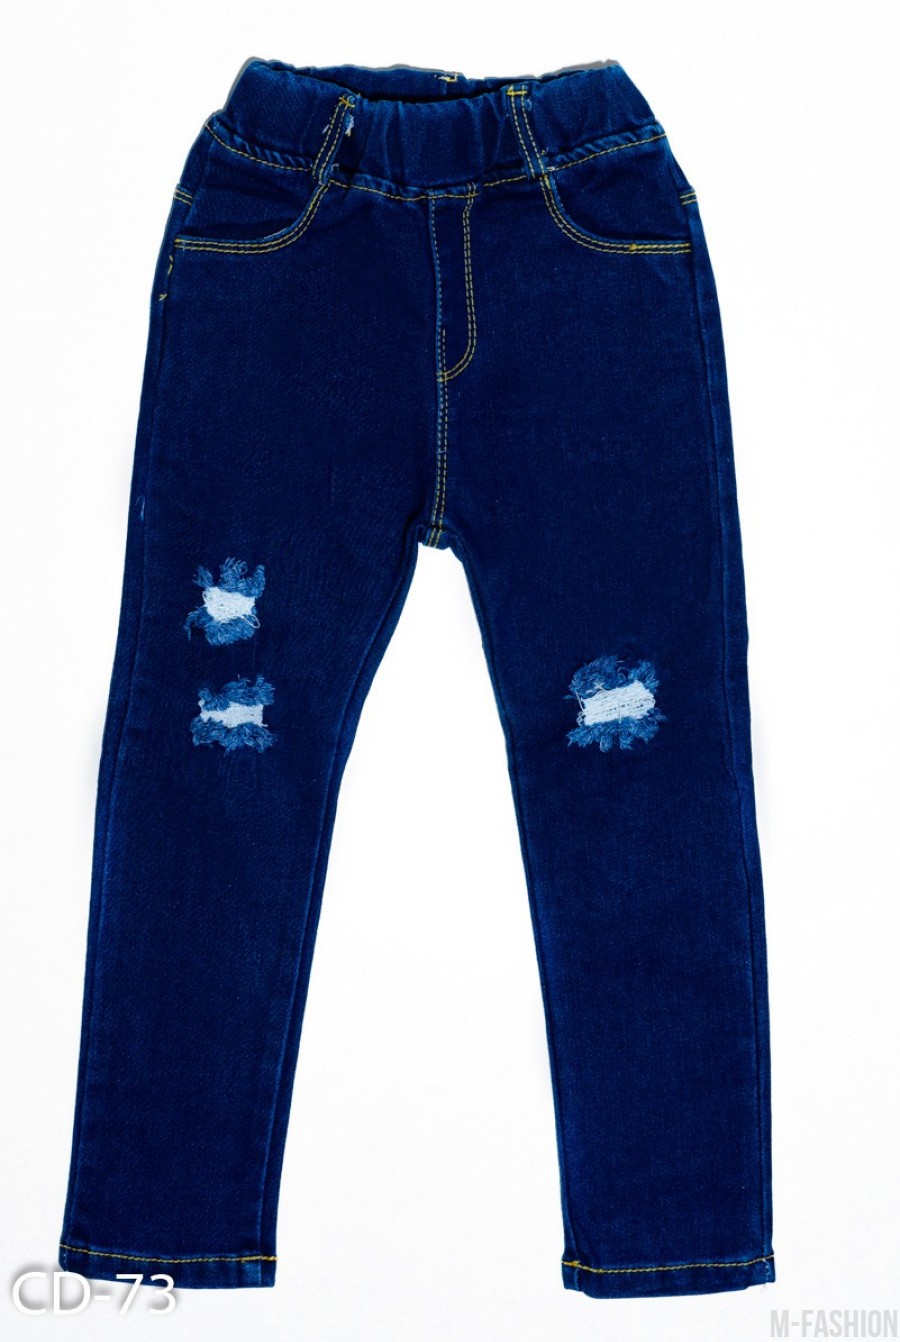 Темно-синие зауженные джинсы на резинке с рваной перфорацией на коленях - Фото 1